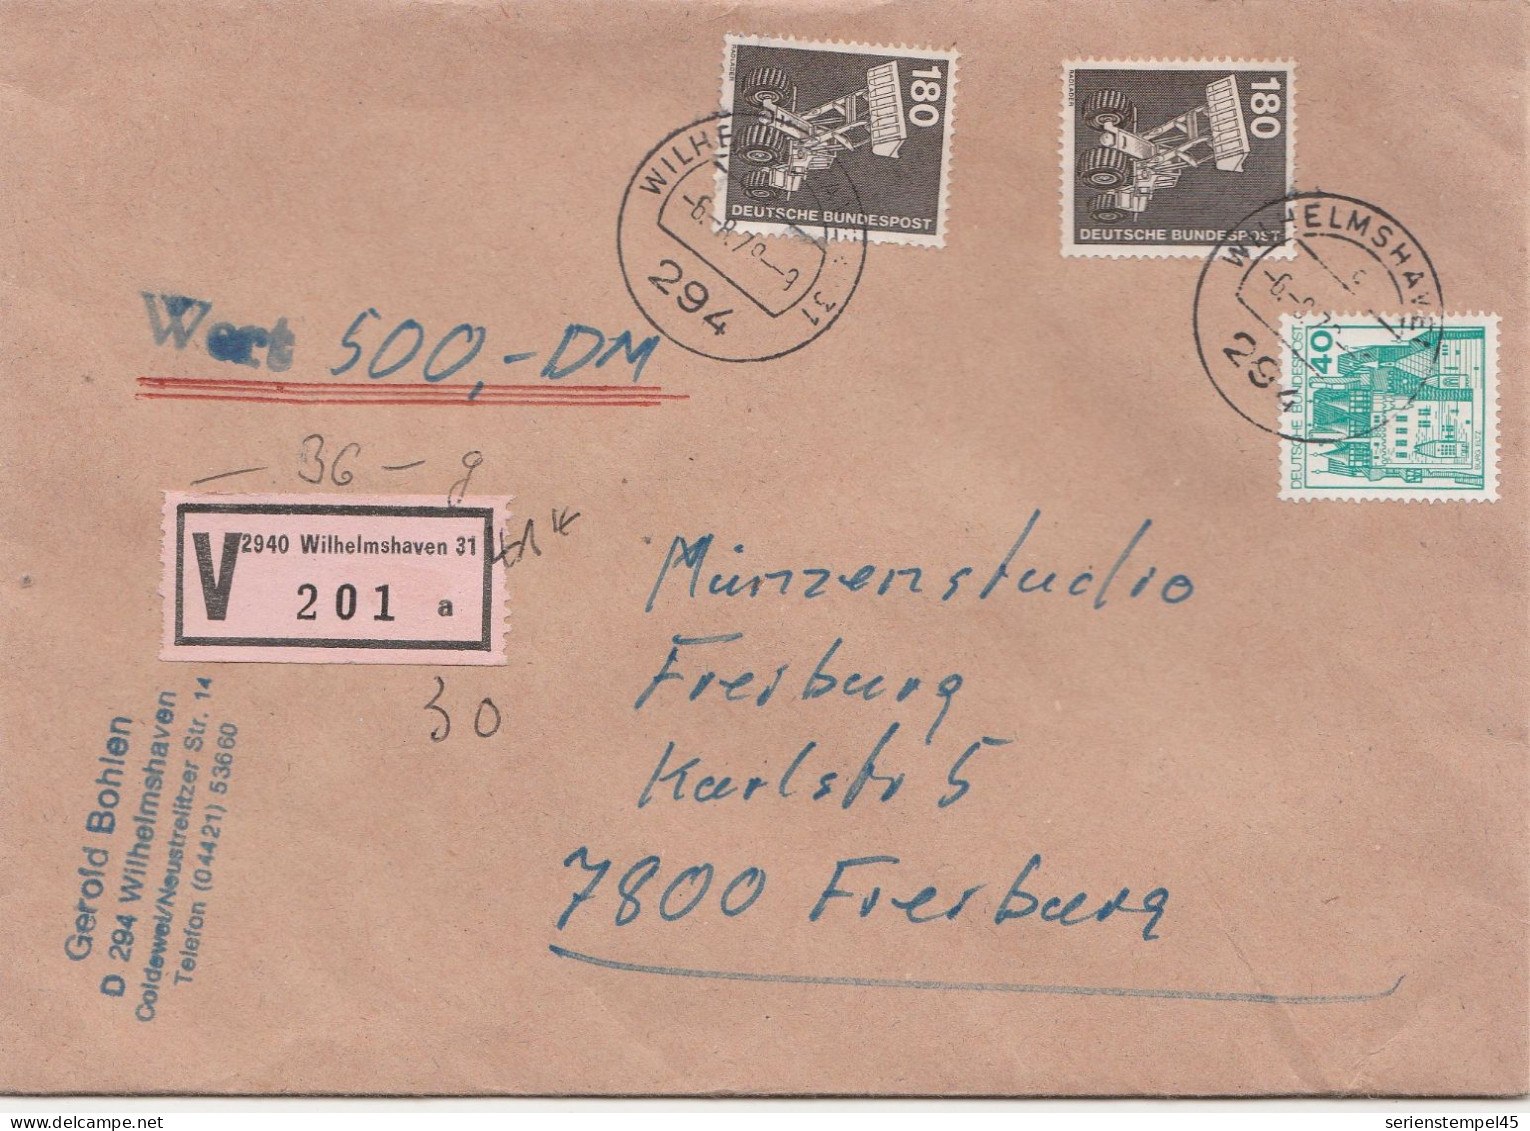 Bund Wertbrief 500 DM Mit V Zettel 2940 Wilhelmshaven Porto 4 DM 1979 - R- & V- Labels